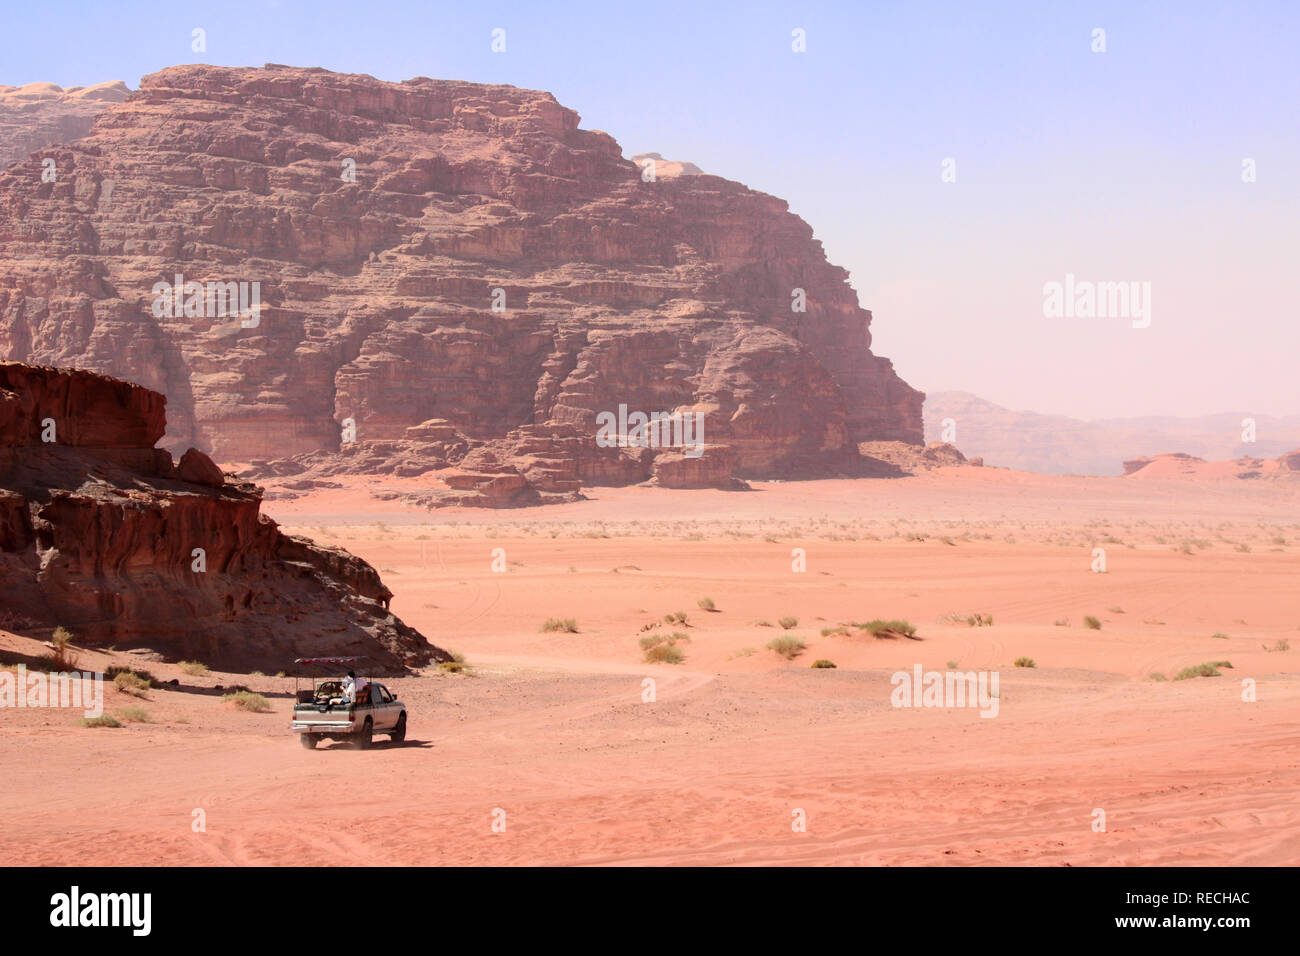 Safari en Jeep dans le désert de Wadi Rum, Jordanie, Moyen-Orient. Les touristes dans la voiture en dehors de la route sur le sable entre les rochers Banque D'Images